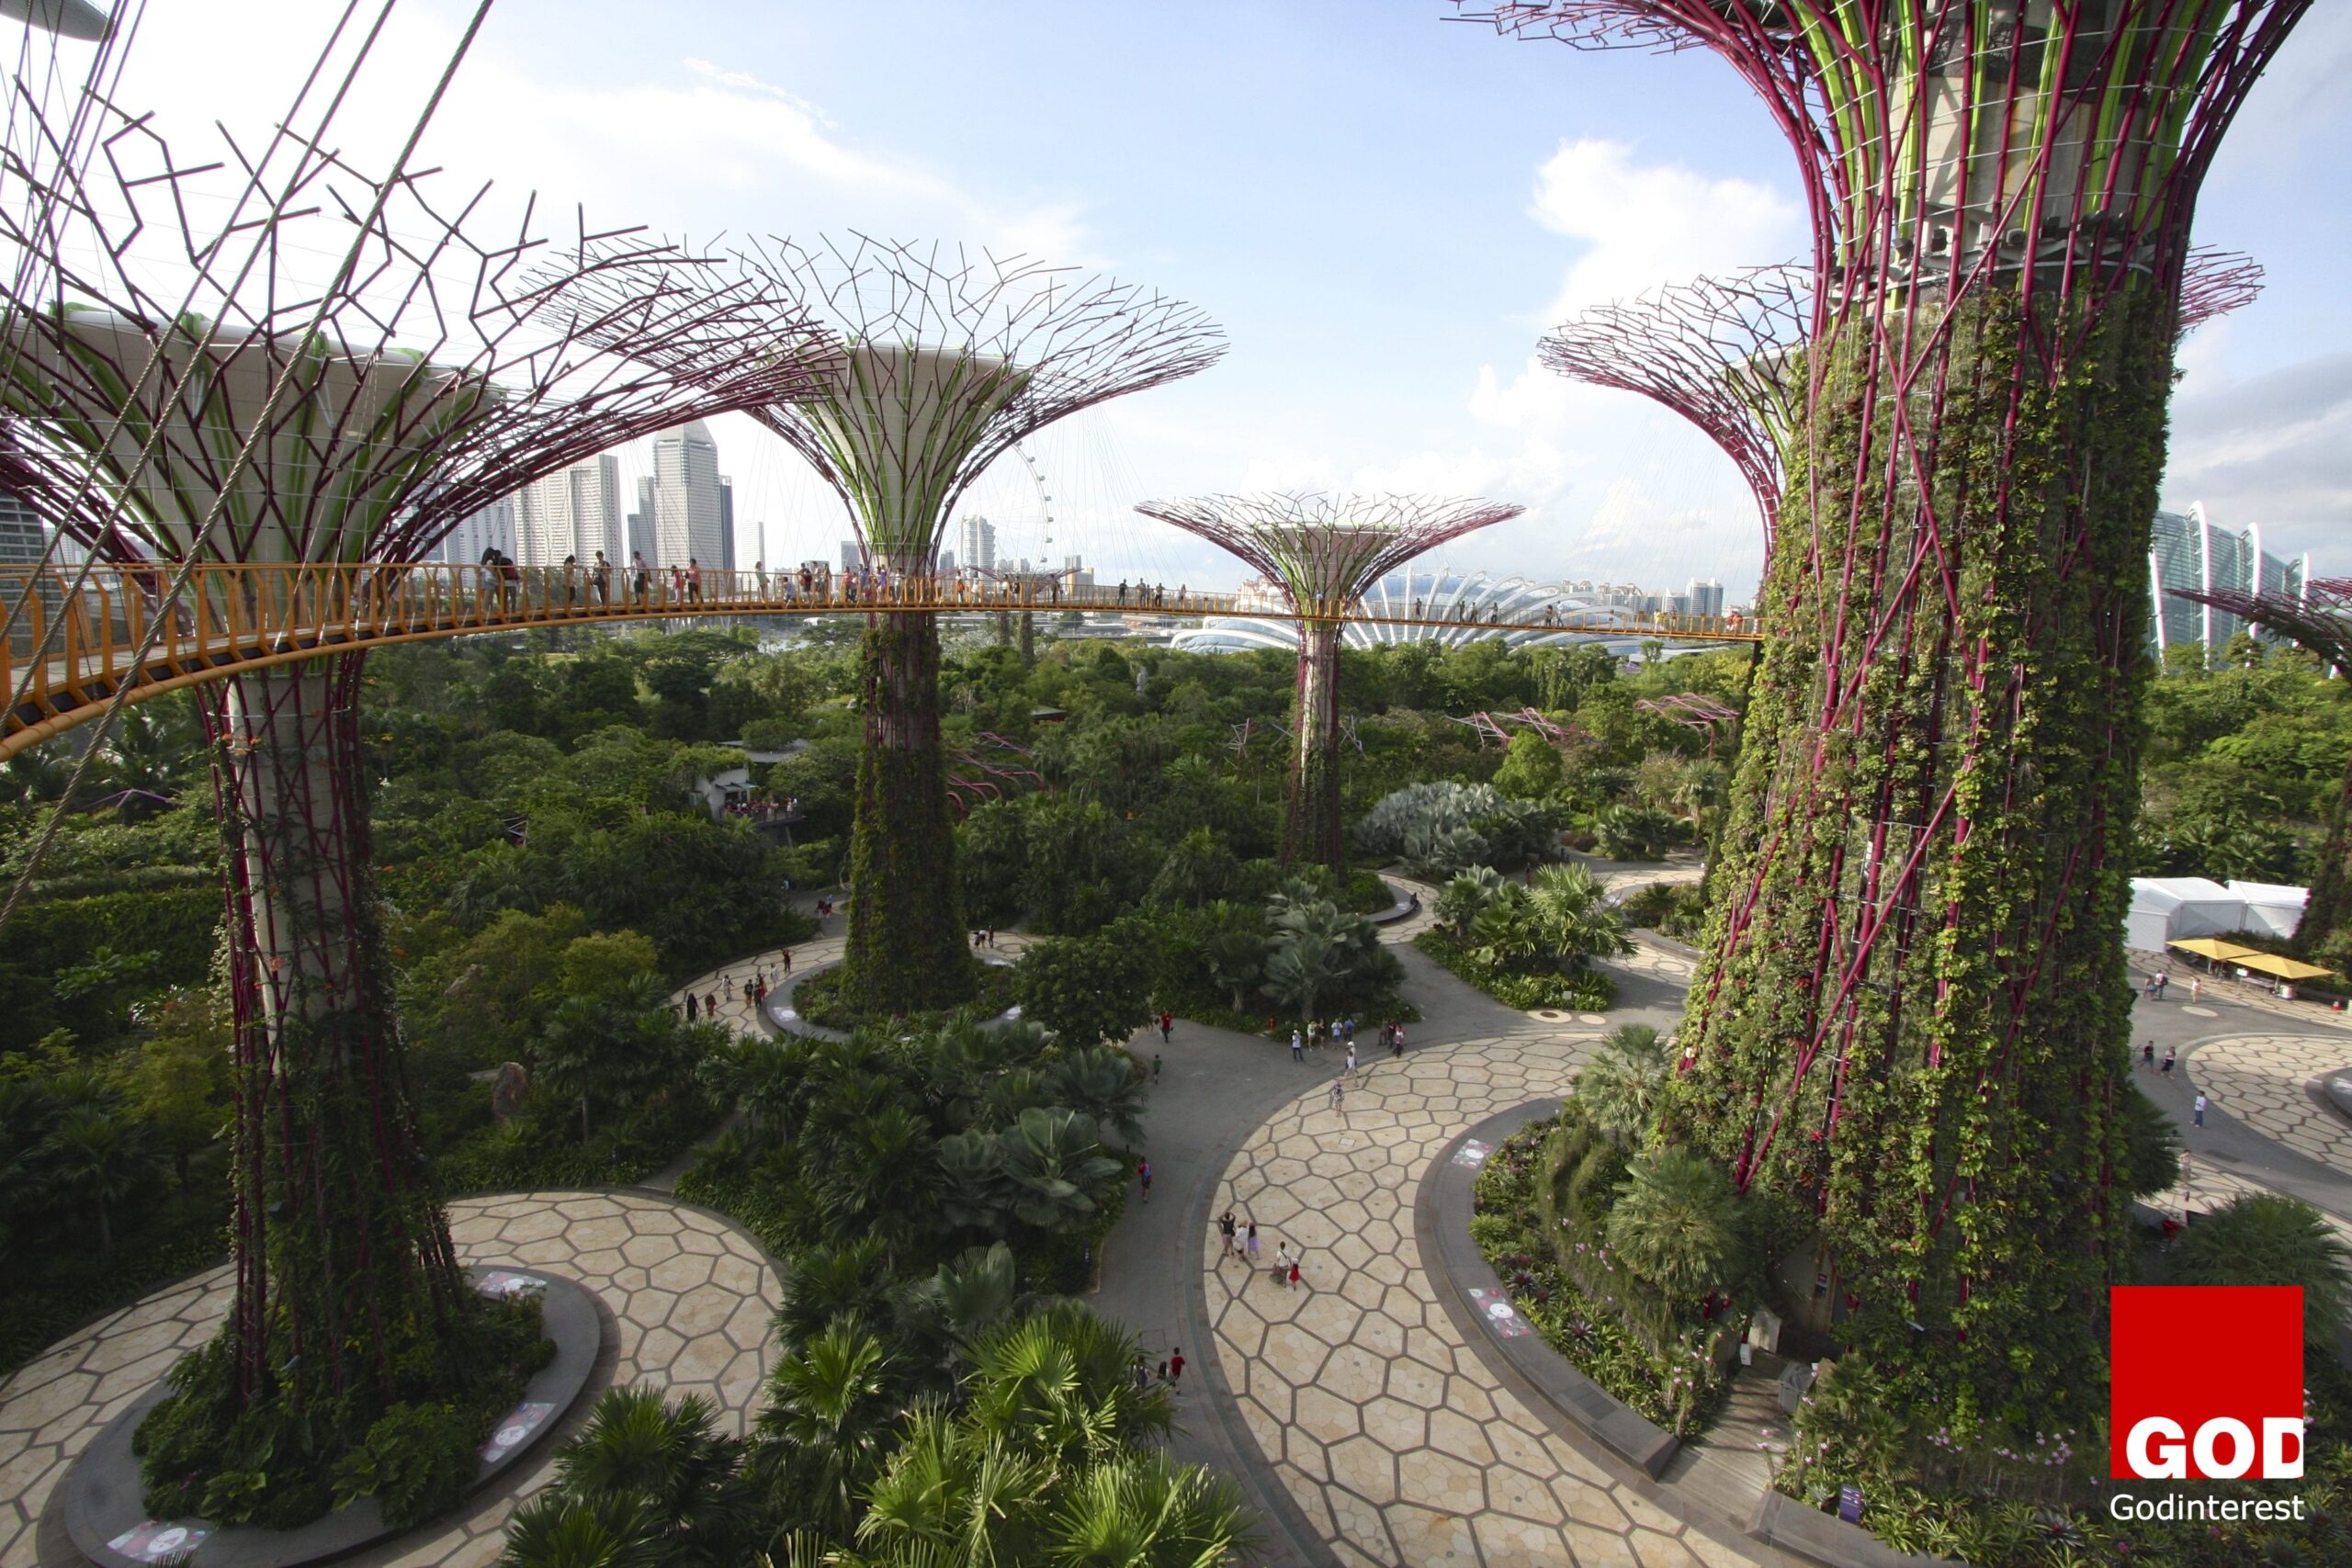 Garden of Eden is in Singapore!